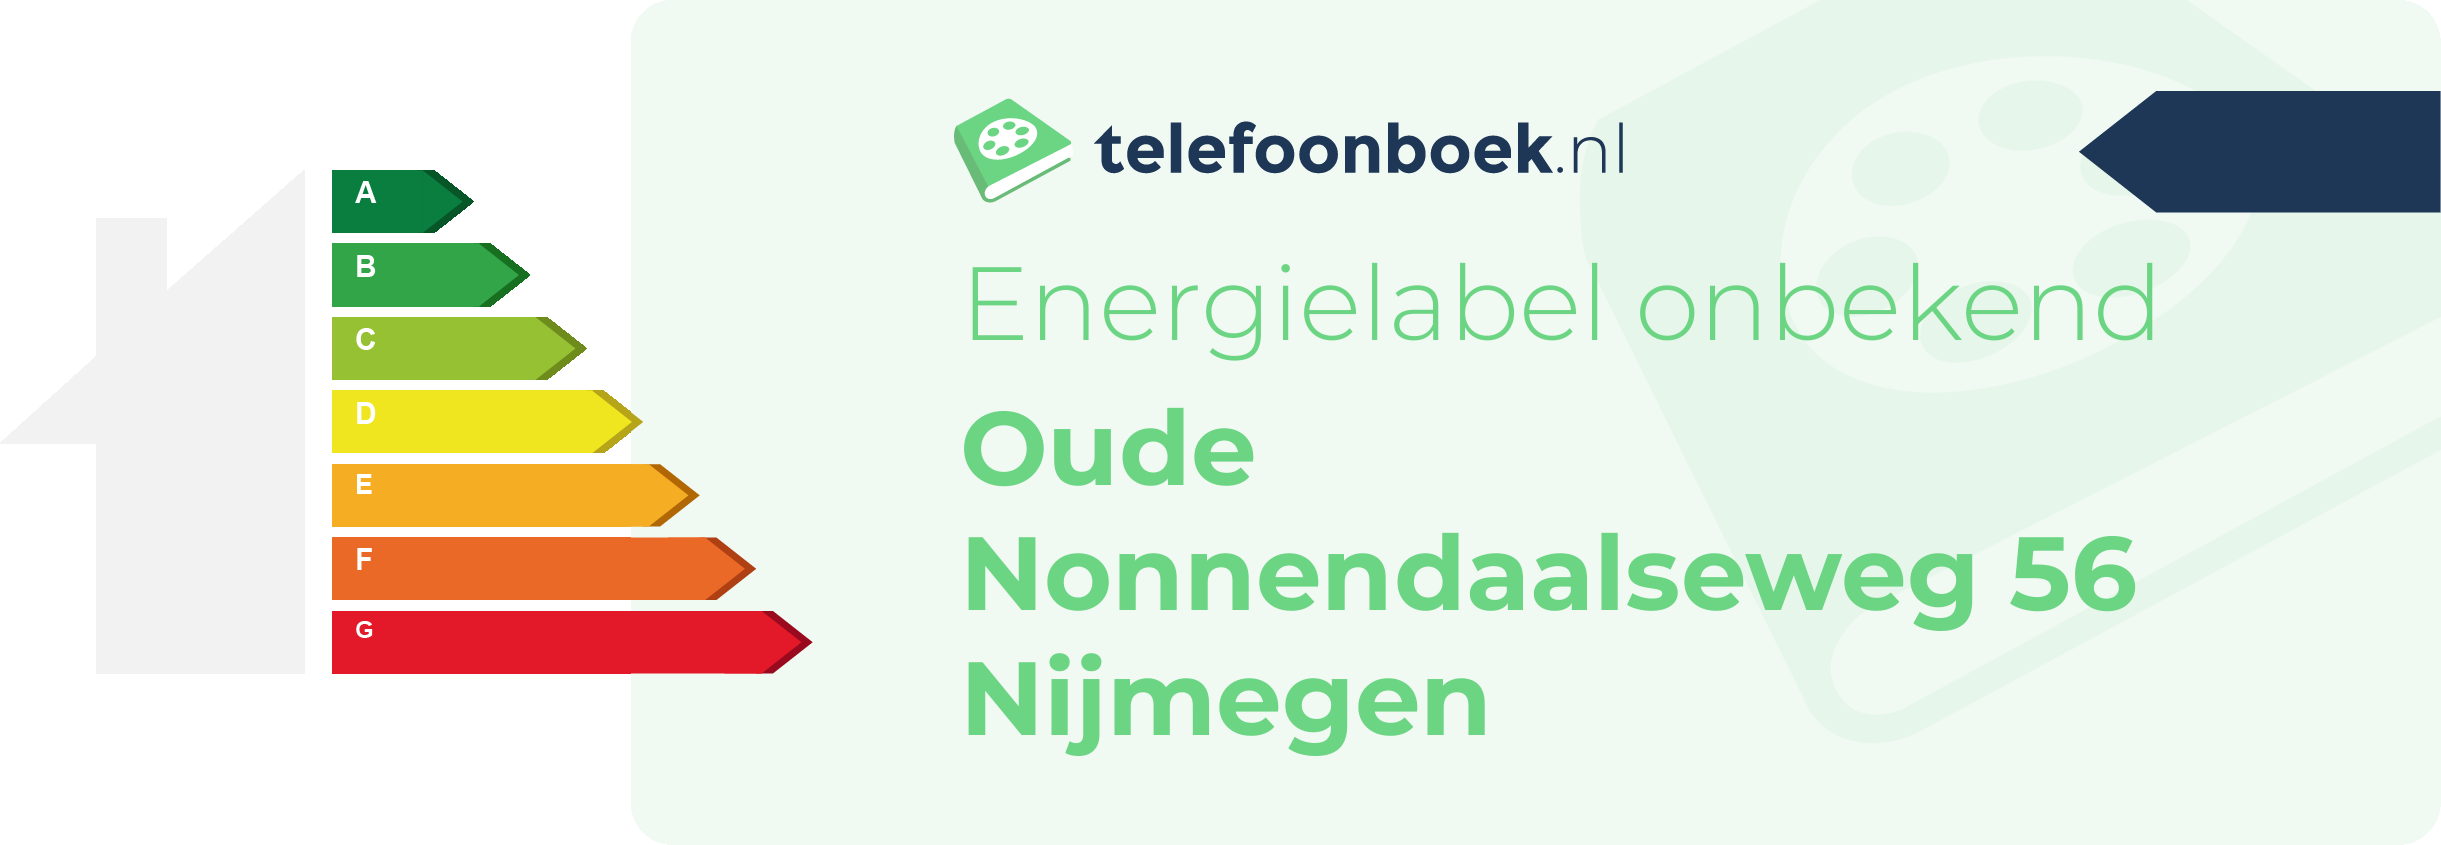 Energielabel Oude Nonnendaalseweg 56 Nijmegen